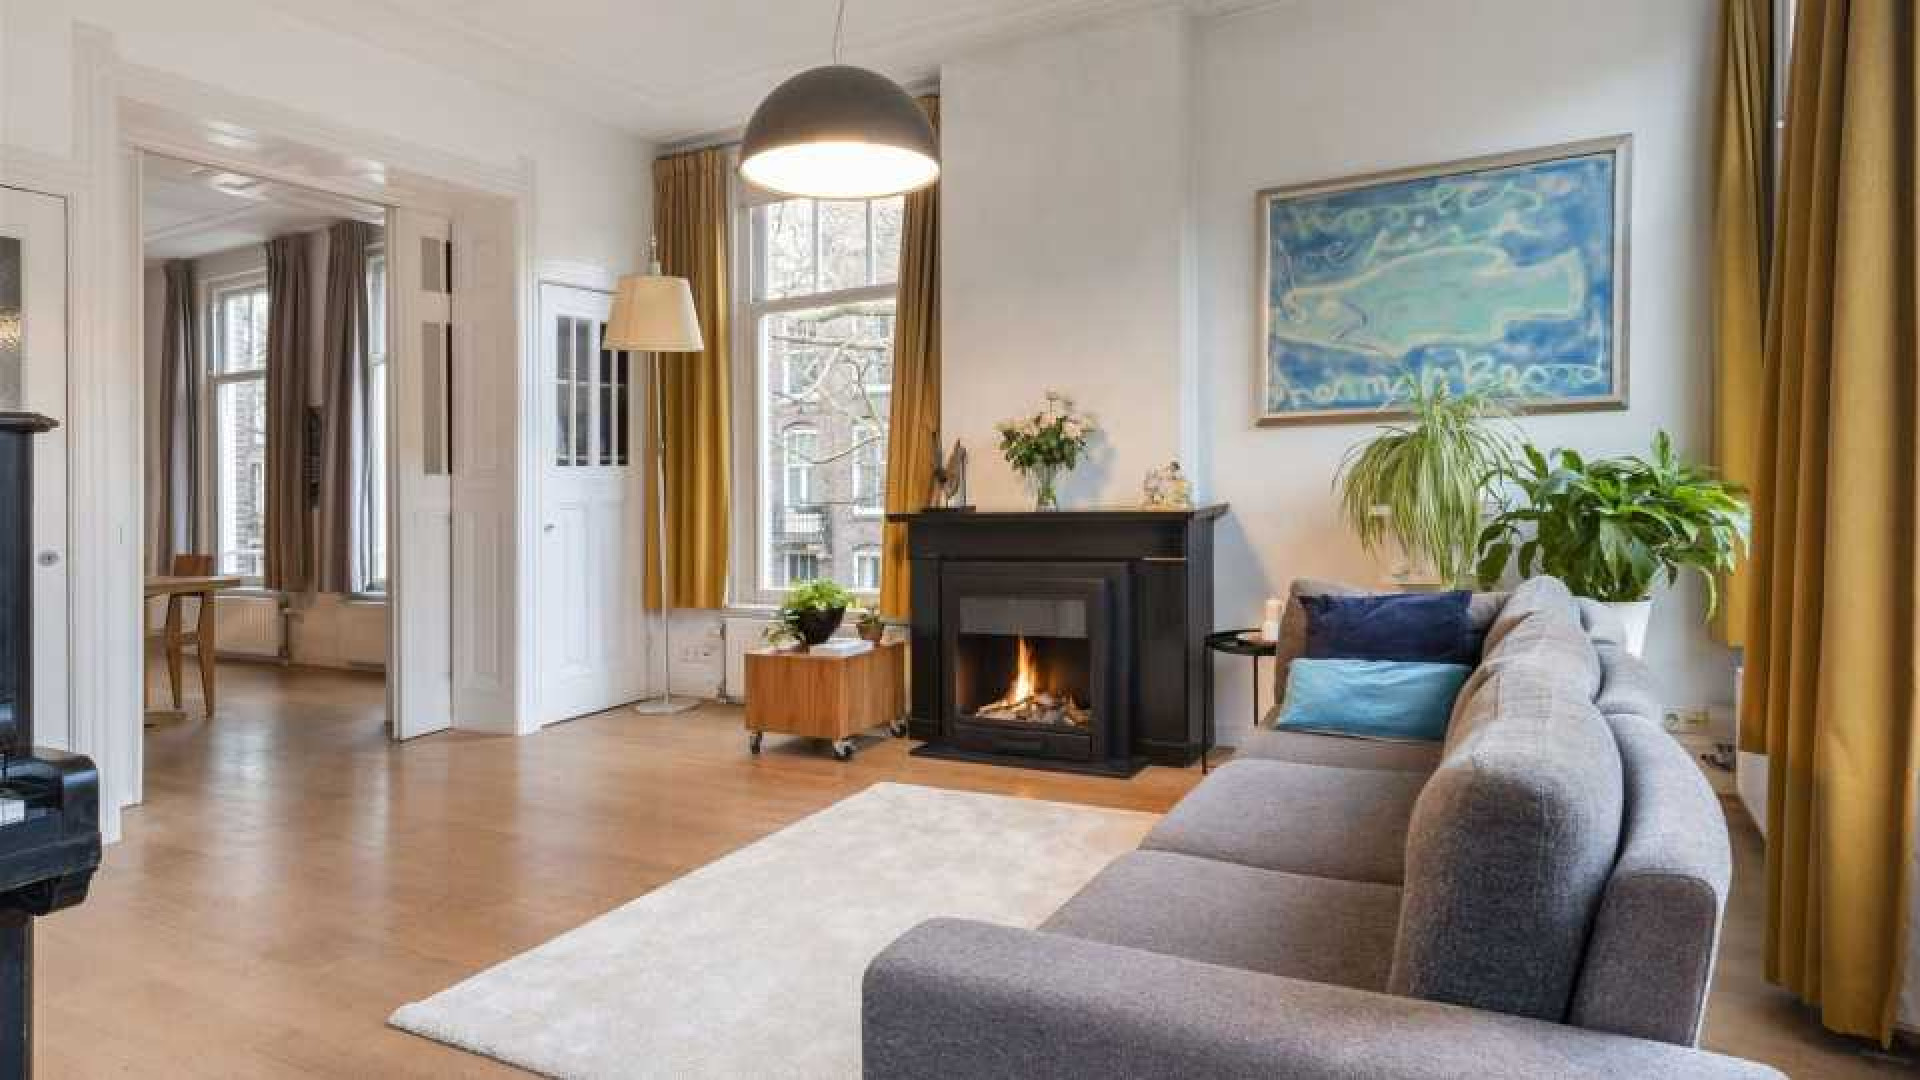 Koefnoen acteur Owen Schumacher zet zijn luxe Amsterdamse appartement te koop. 2